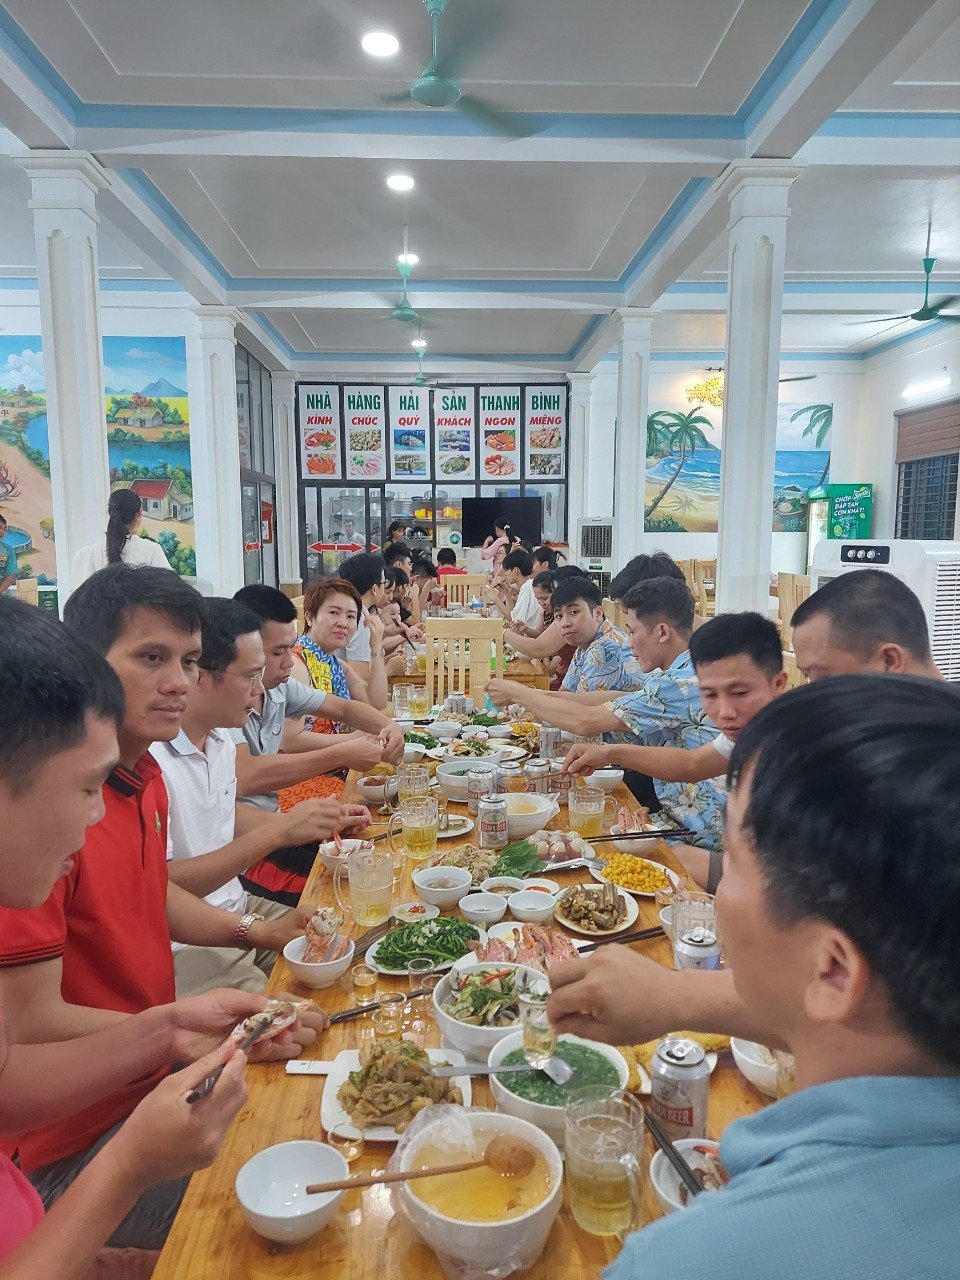 Lượng nhu cầu ăn uốn tại biển Hải Tiến Thanh Hoá hiện nay